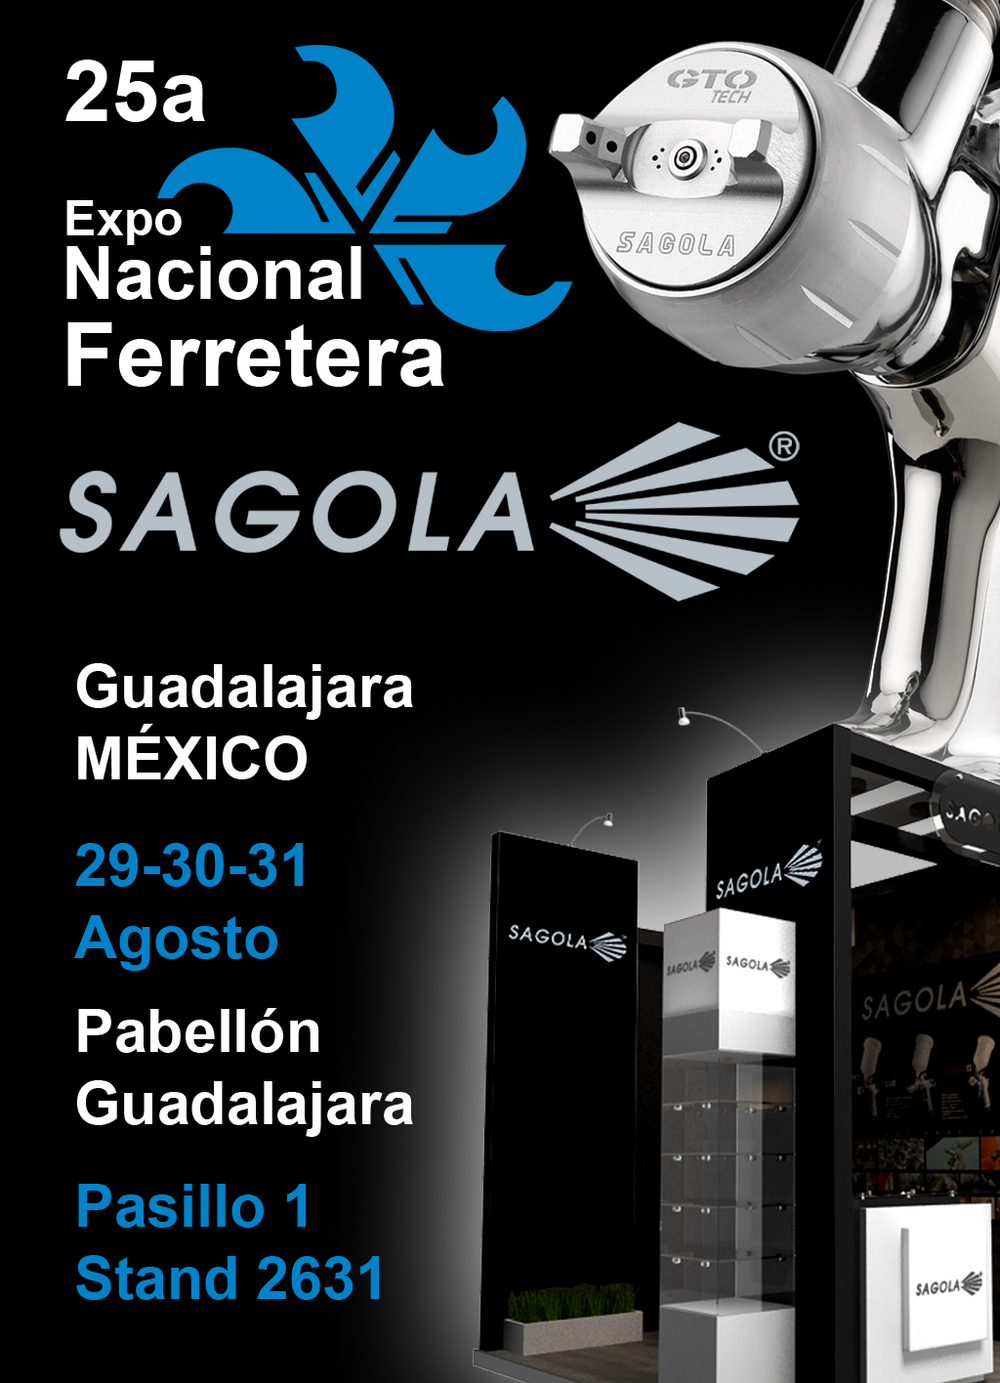 SAGOLA will participate in Expoferretera 2013